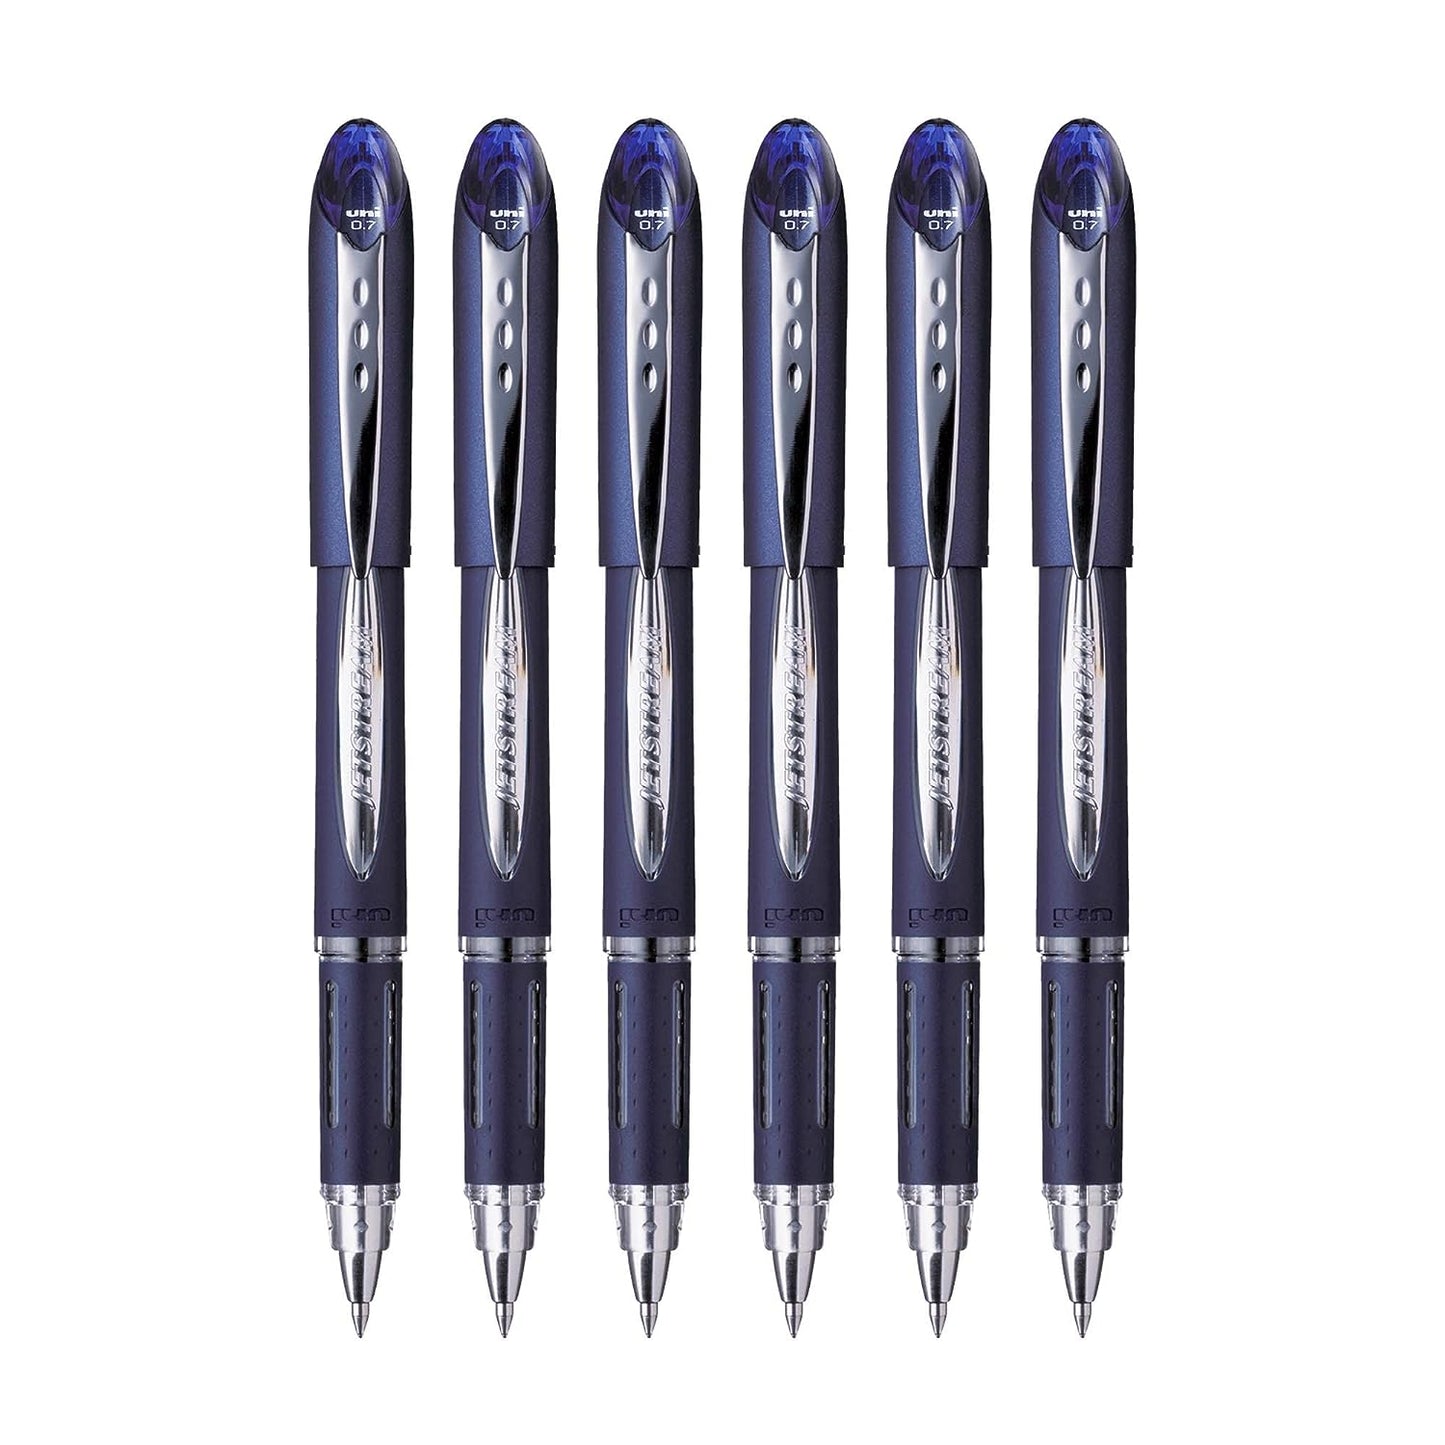 UniBall Jetstream Sx217 Roller Ball Pen - Blue Ink